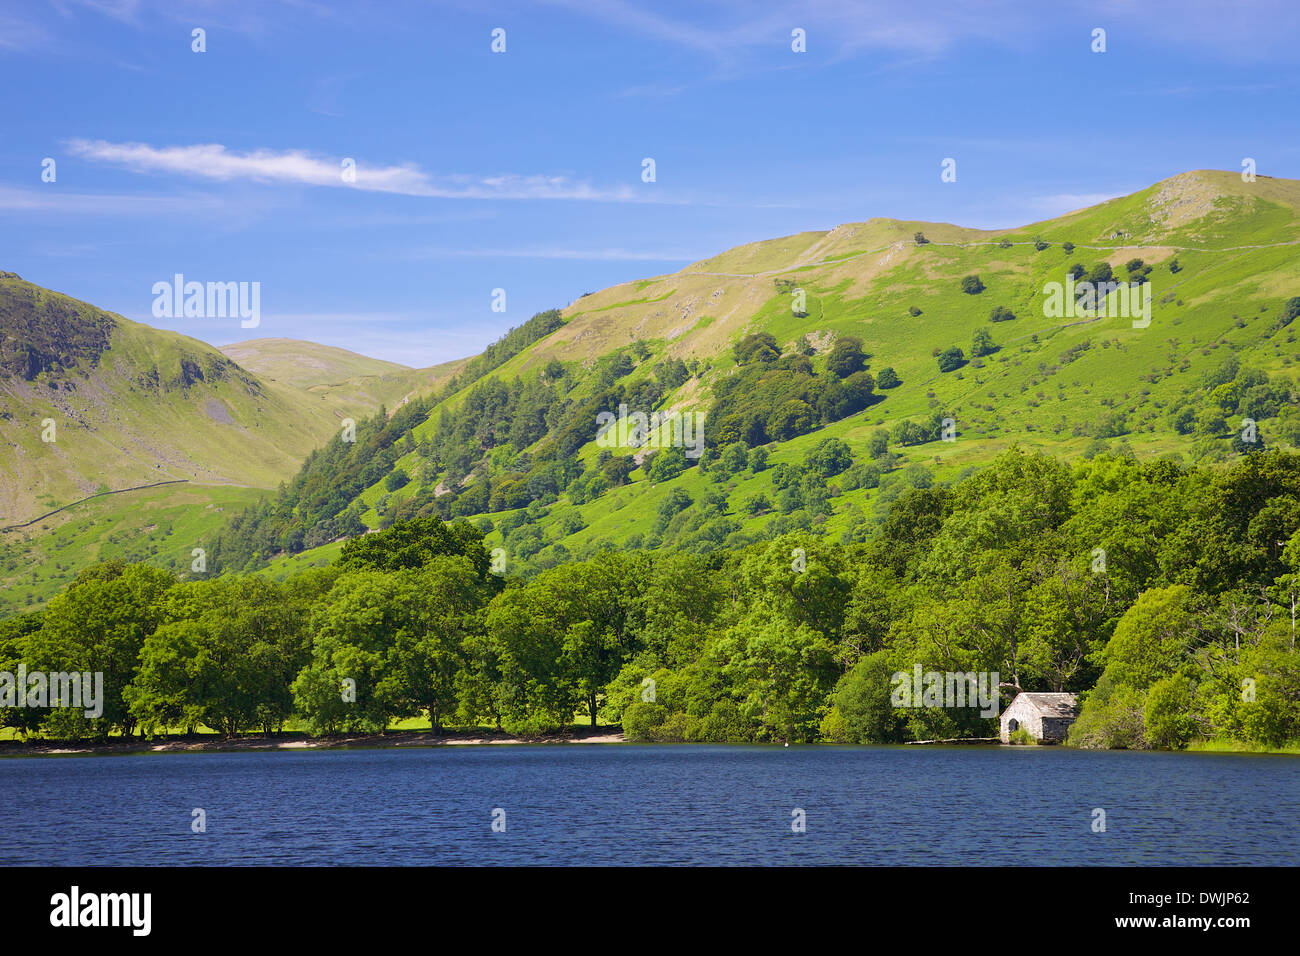 La scène du lac avec bateaux, arbres et collines. Le Lake District. L'été Banque D'Images